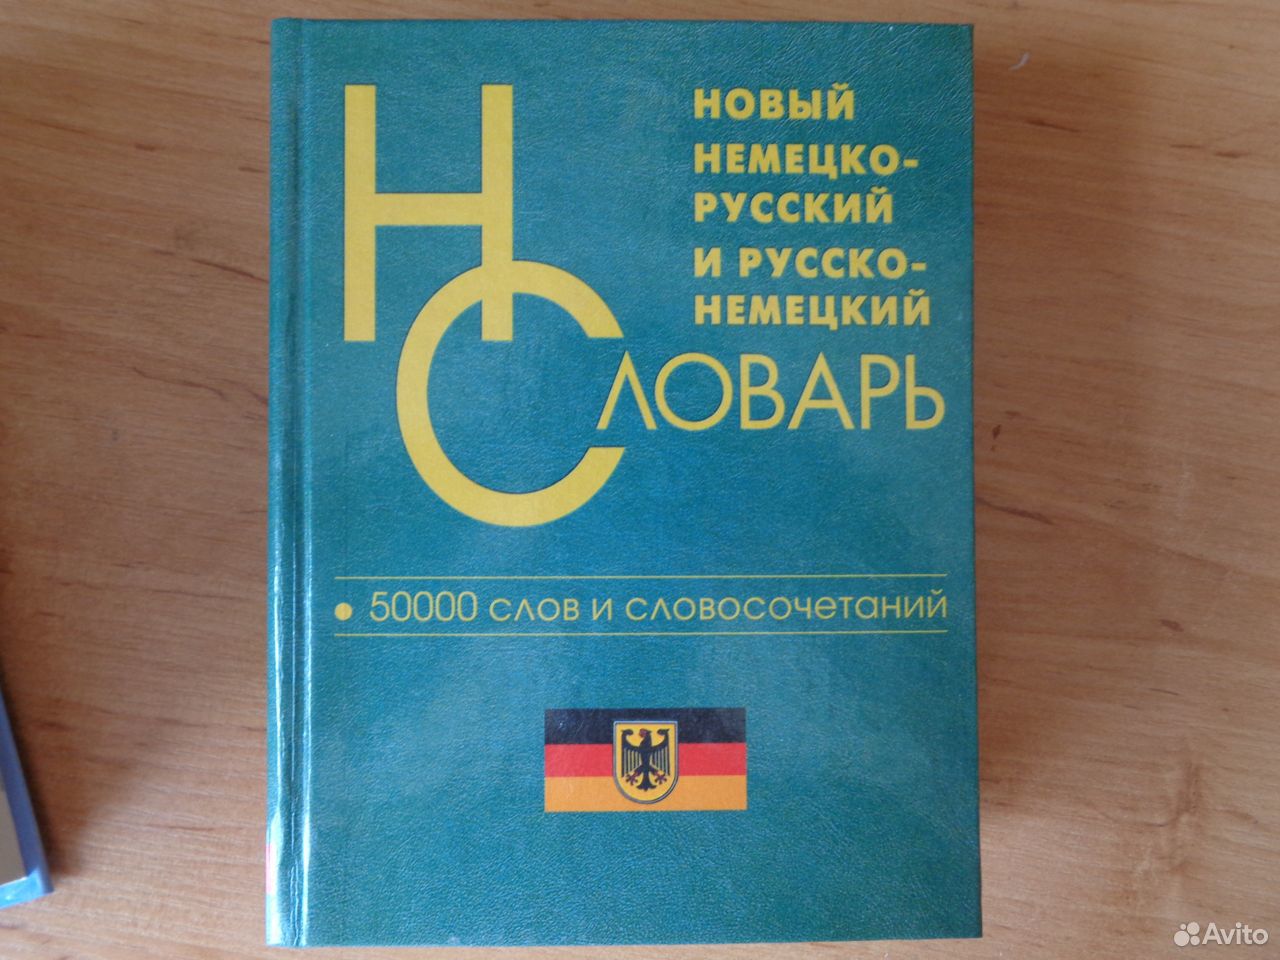 Немецко-русский словарь 89605442817 купить 1